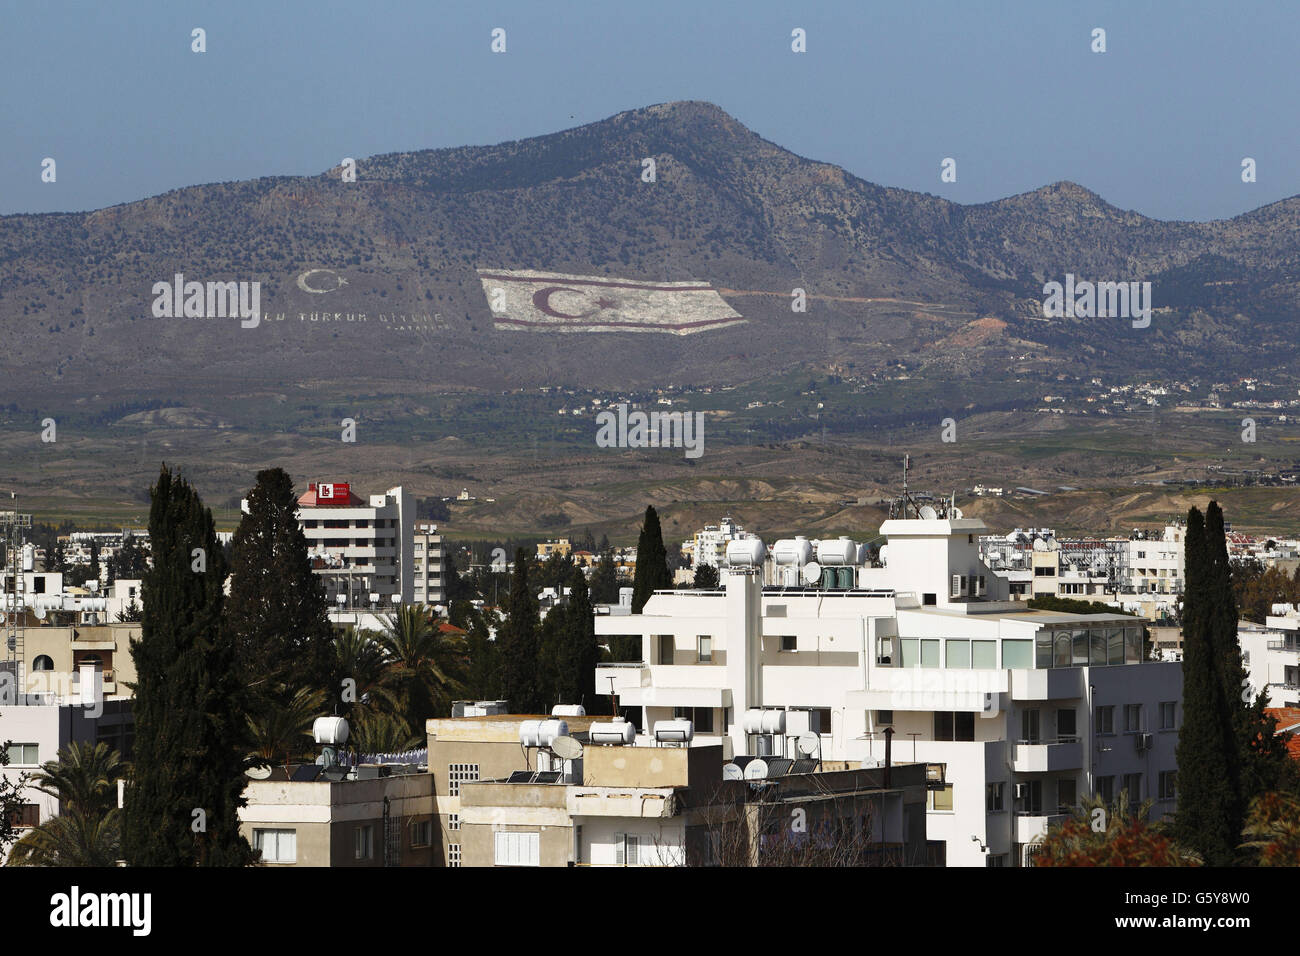 Ein allgemeiner Blick auf türkisch kontrolliertes Zypern vom Dach des ehemaligen Ledra Palace Hotels innerhalb der Pufferzone der Vereinten Nationen zwischen den griechischen und türkischen kontrollierten Gebieten der Insel. Stockfoto